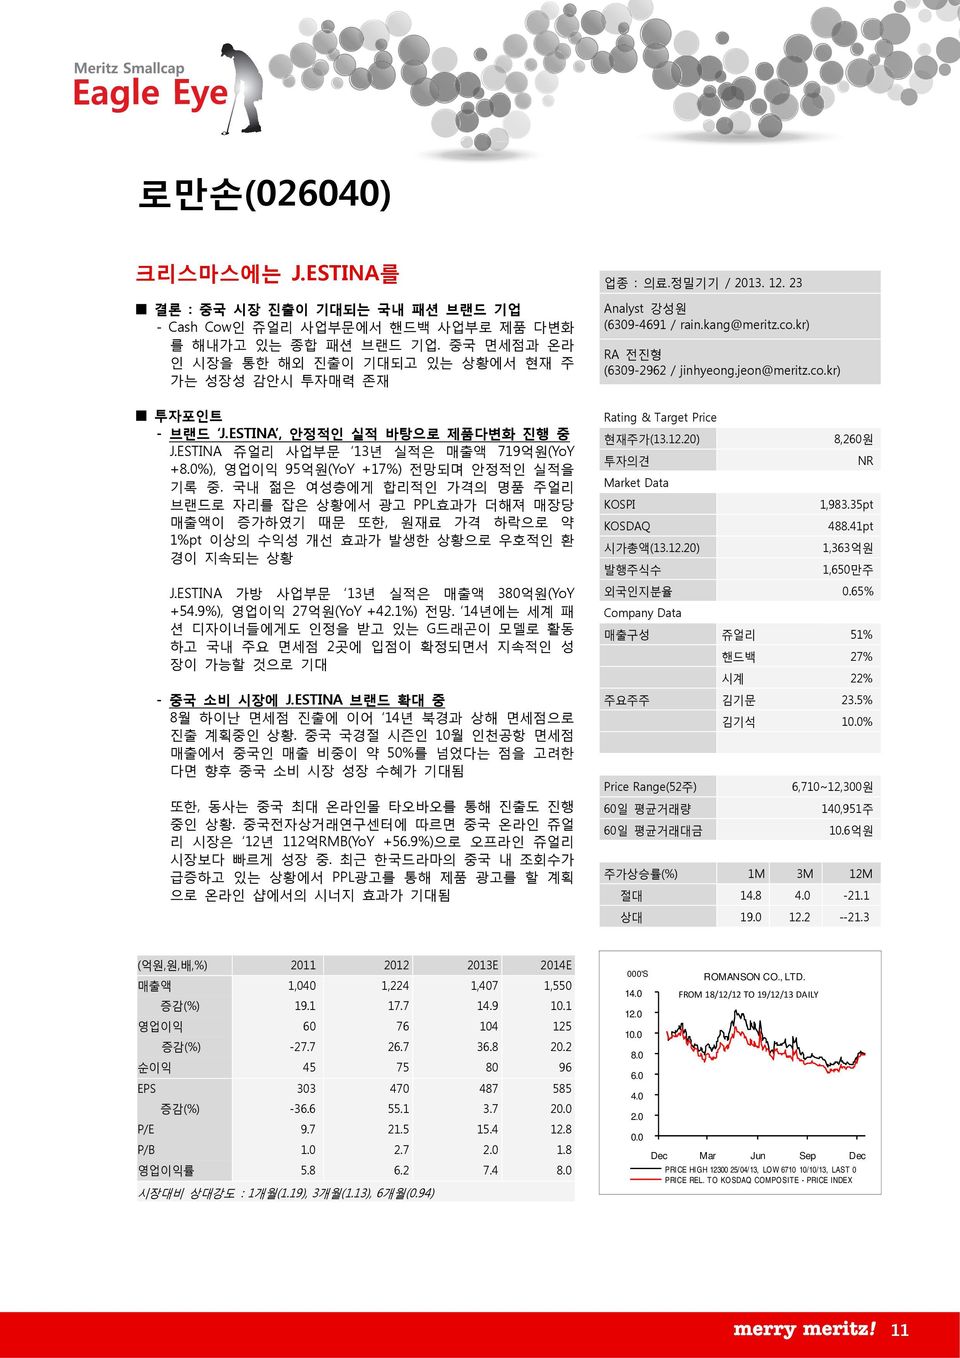 ESTINA 쥬얼리 사업부문 13년 실적은 매출액 719억원(YoY +8.%), 영업이익 95억원(YoY +17%) 전망되며 안정적인 실적을 기록 중.